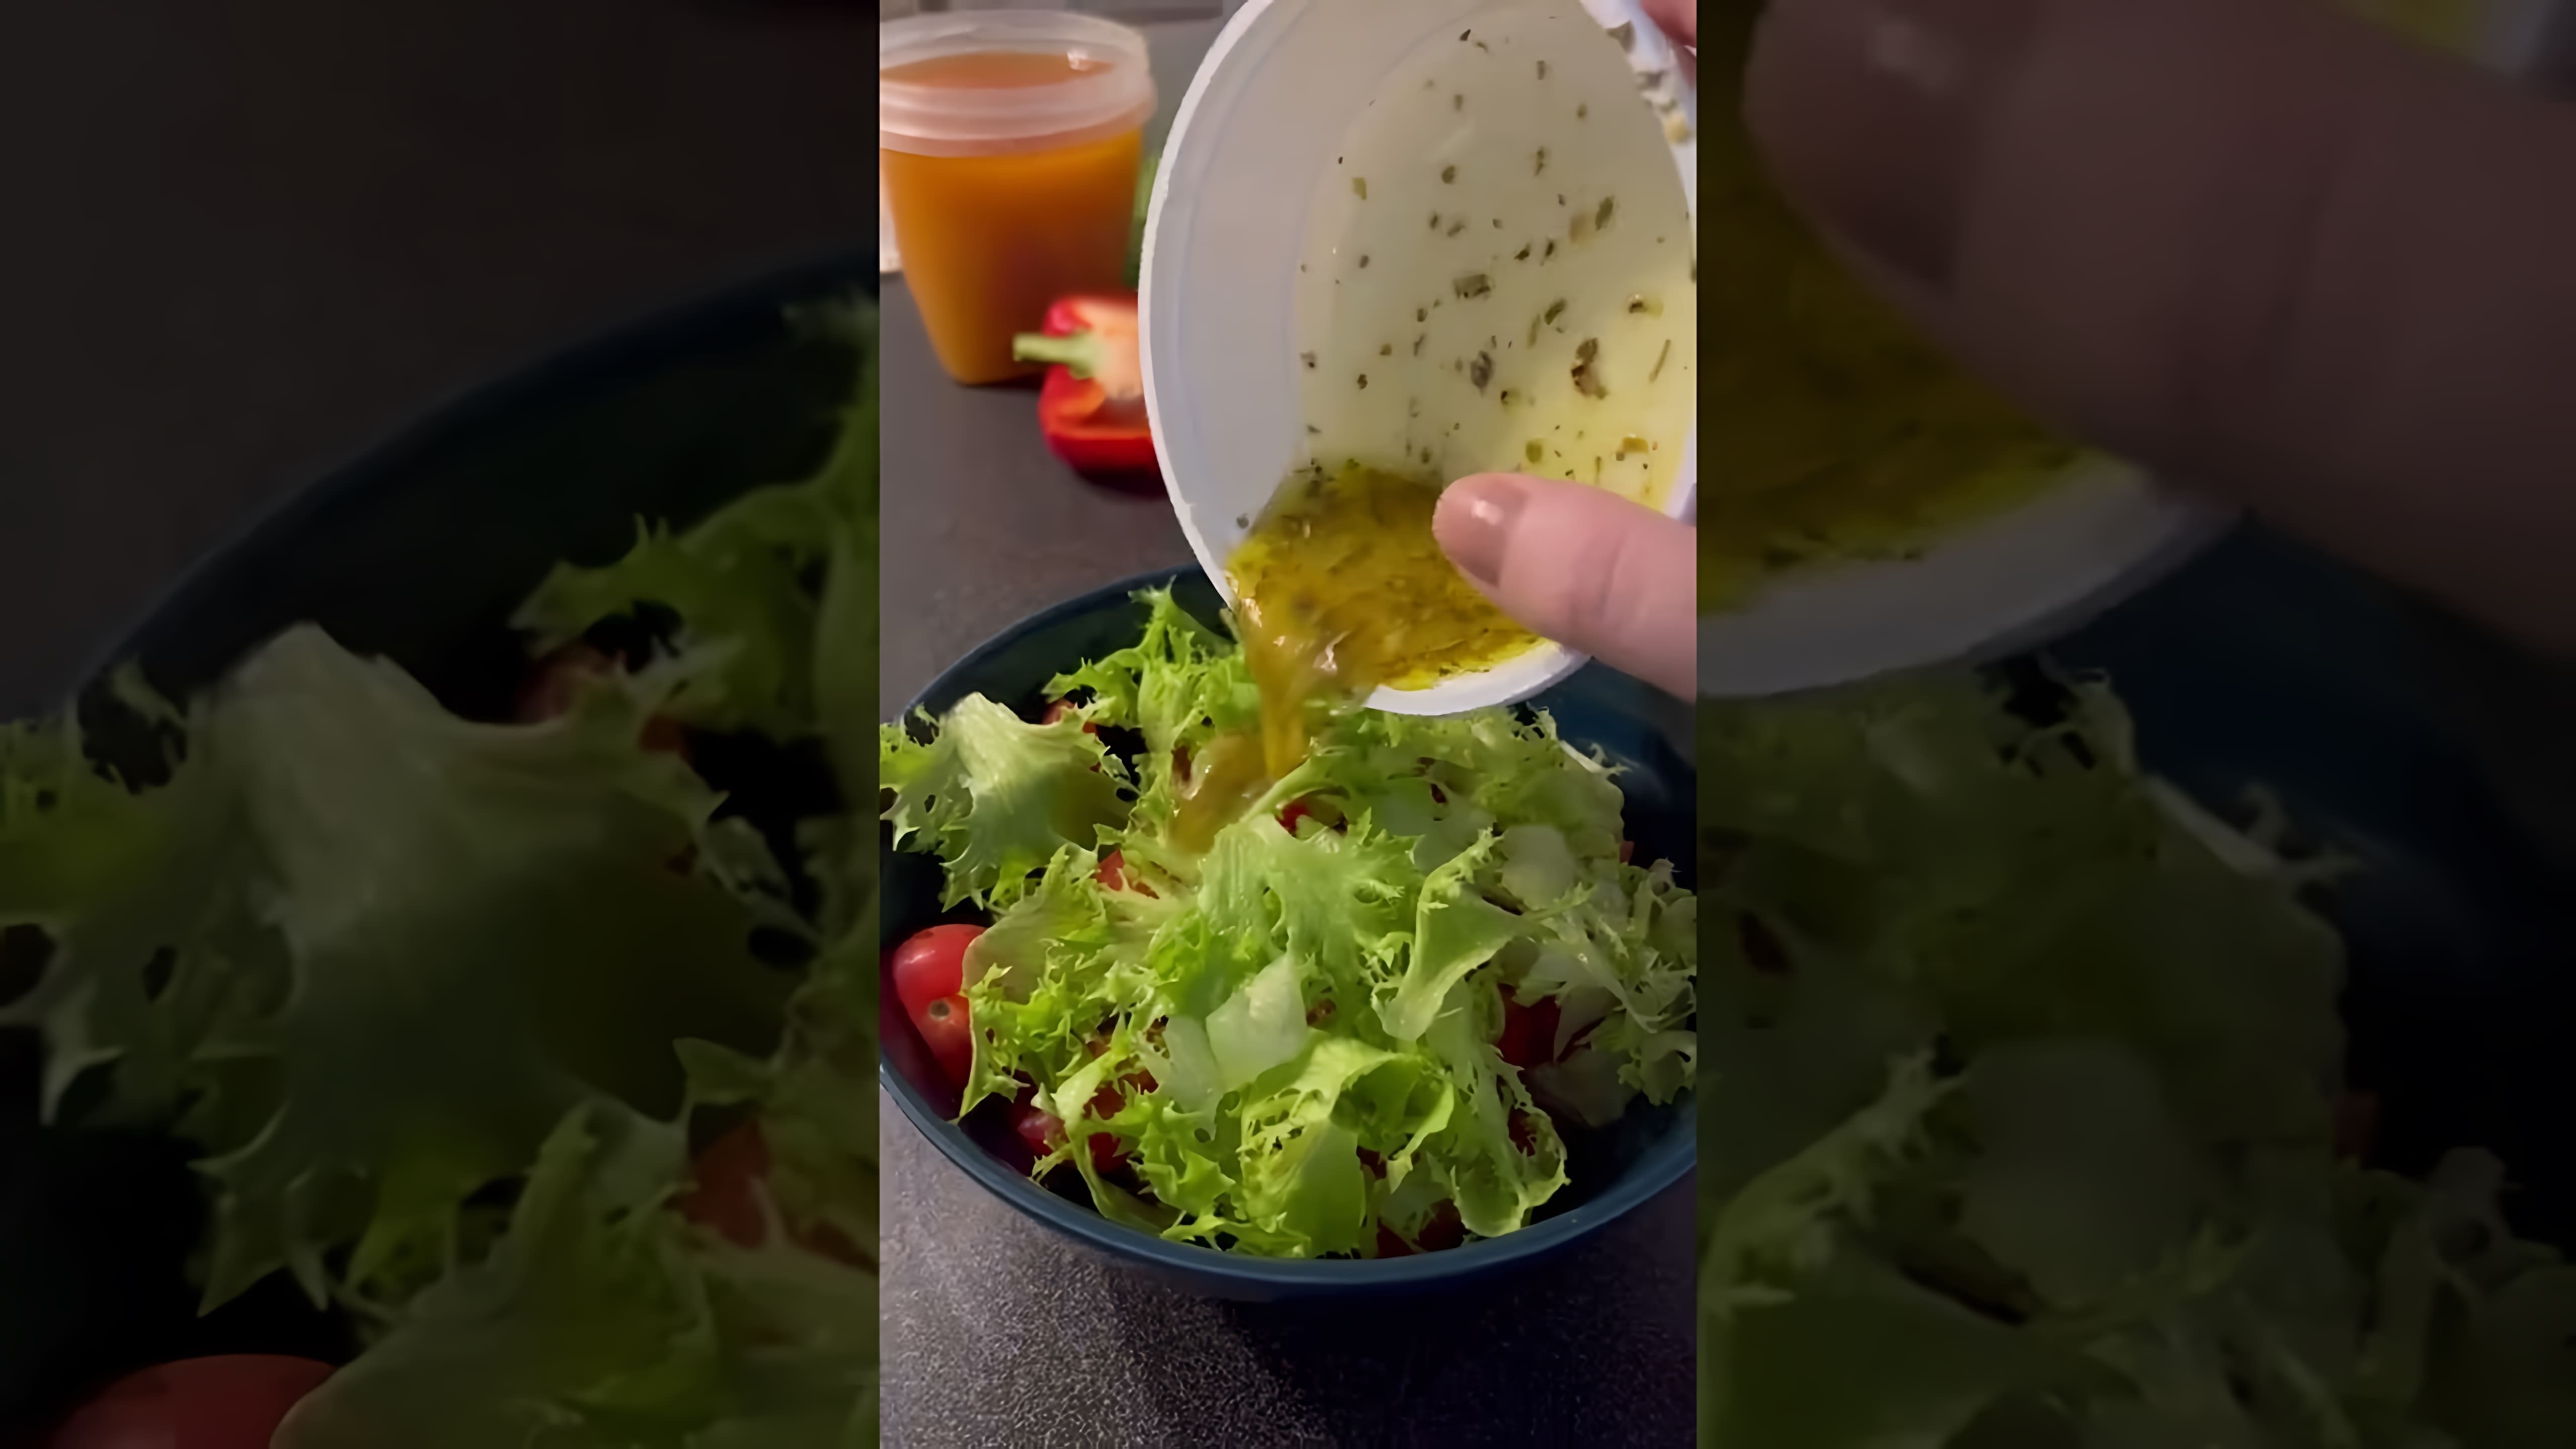 В этом видео демонстрируется рецепт греческого салата, который отличается от традиционных майонезных салатов